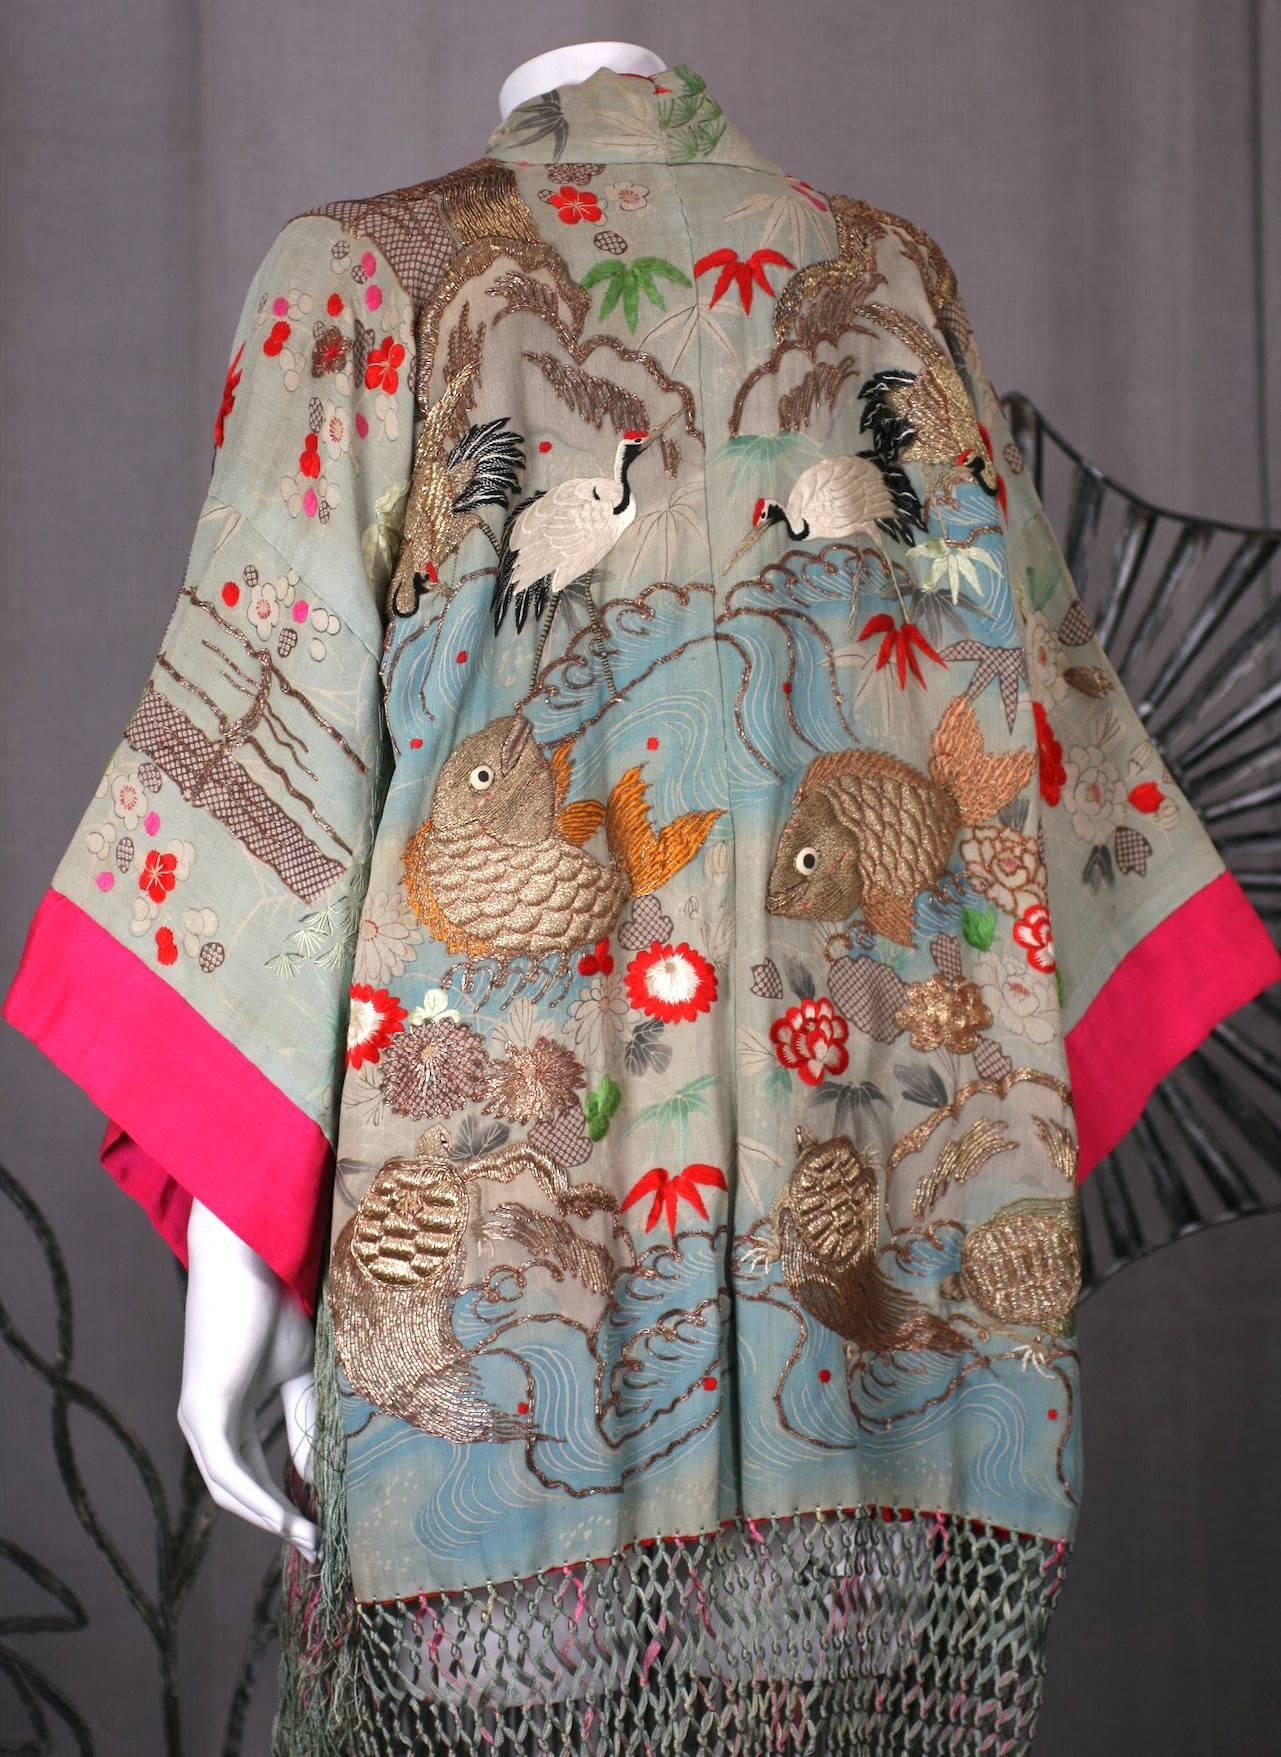 Elaborately Embroidered and Fringed Kimono 1